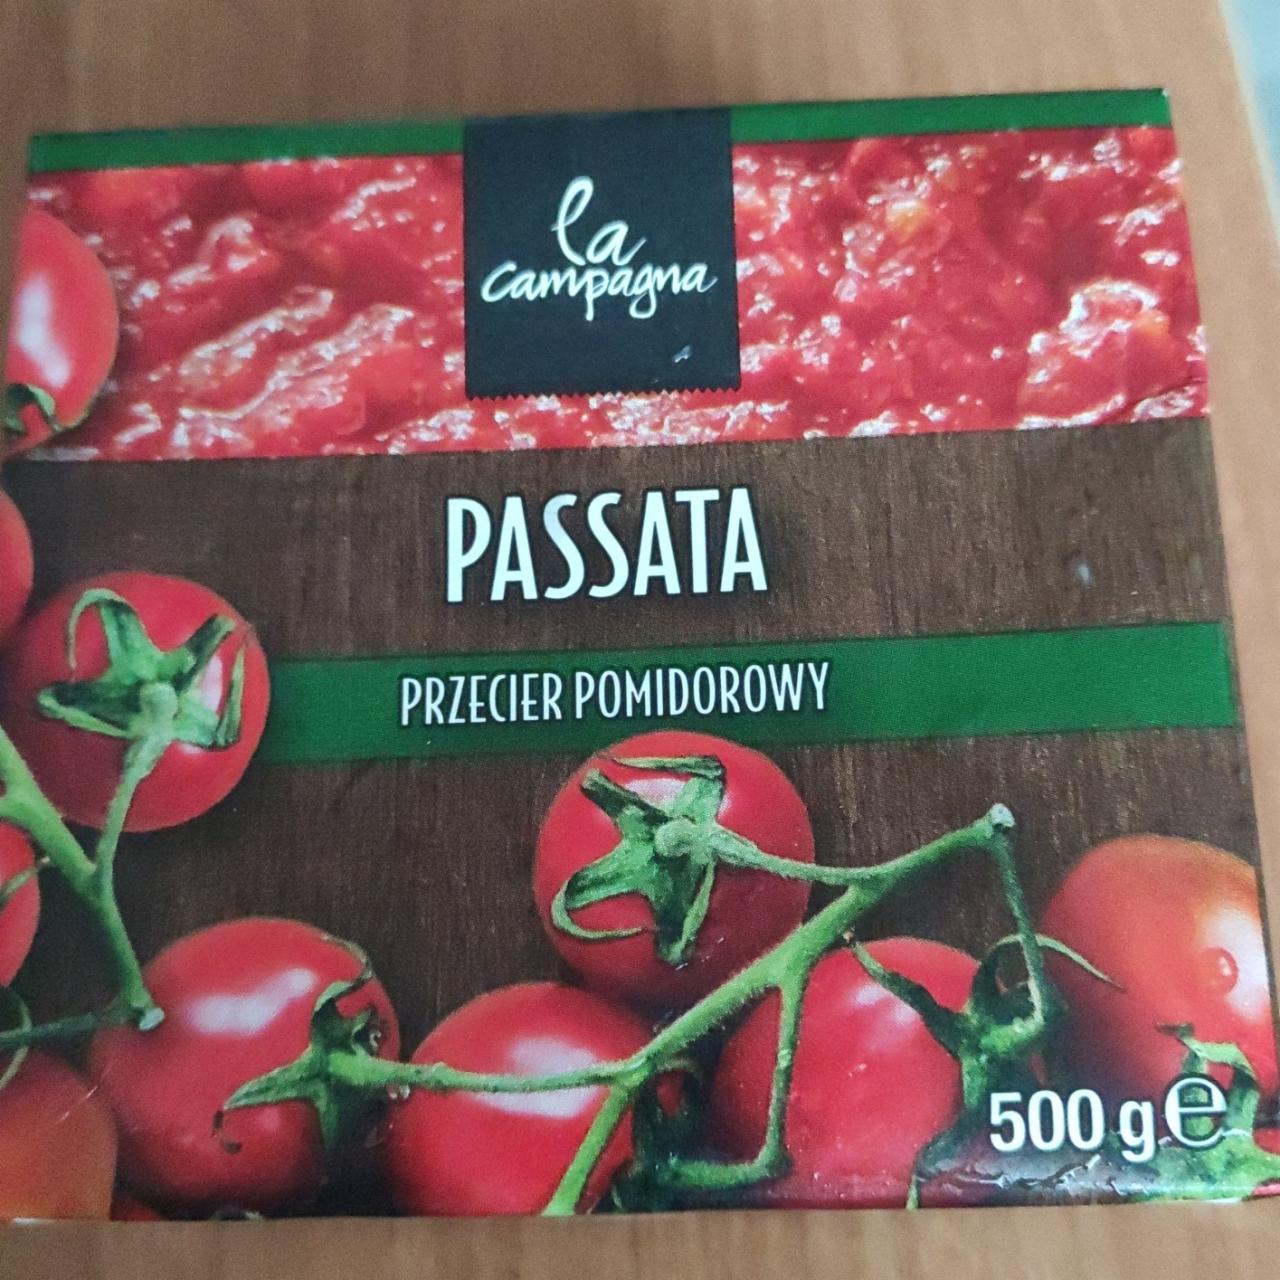 Фото - Томатное пюре Passata Tomato Puree La Campagna